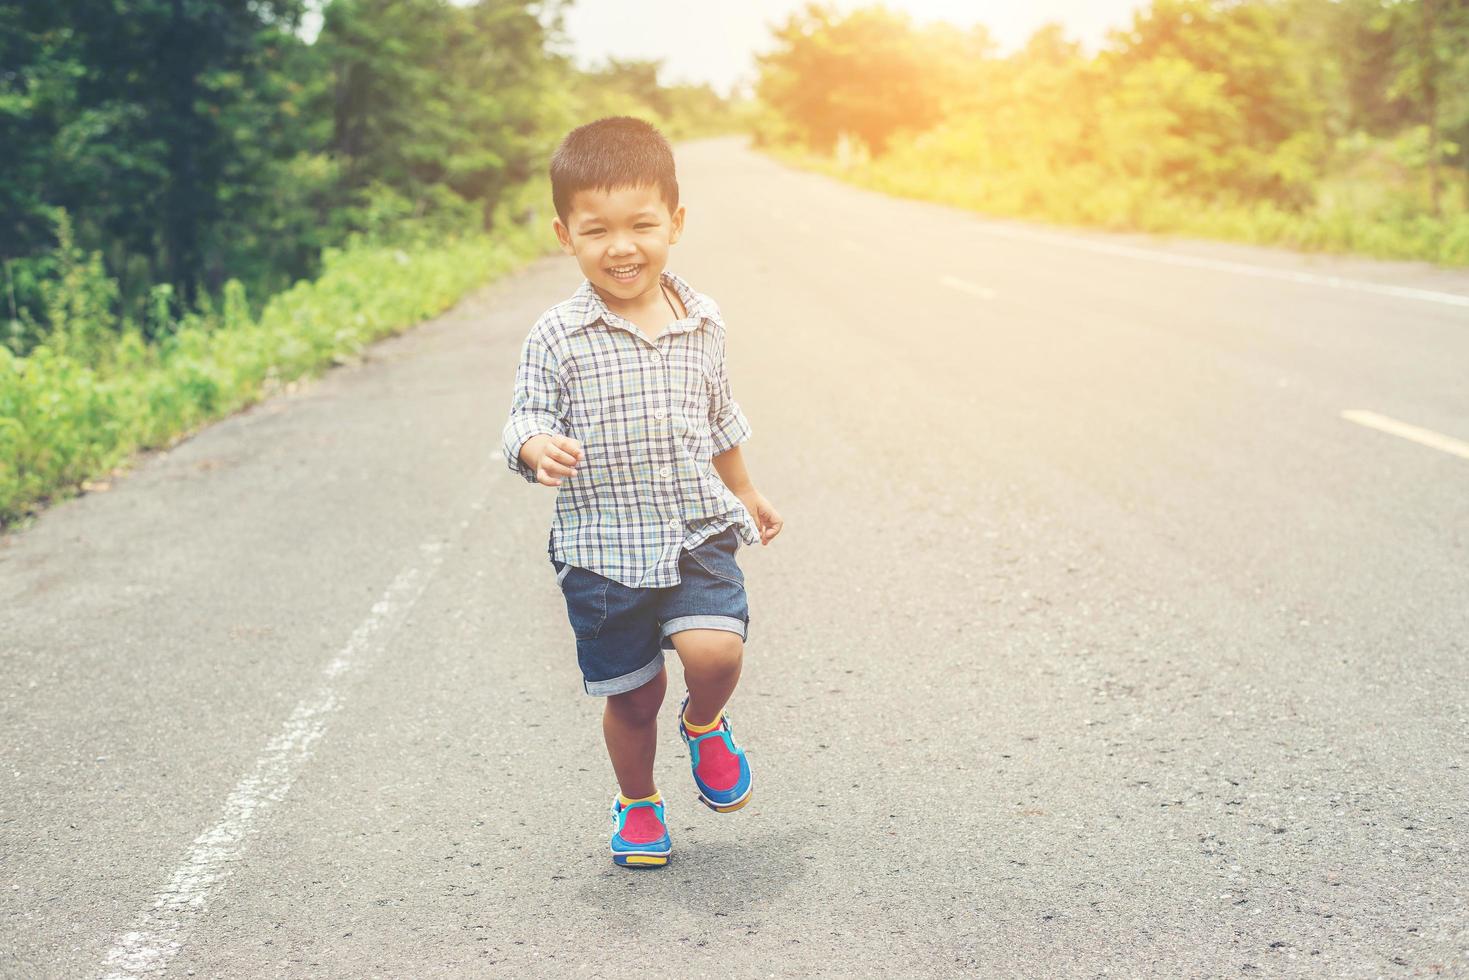 niño feliz en movimiento, sonriente corriendo en la calle. foto